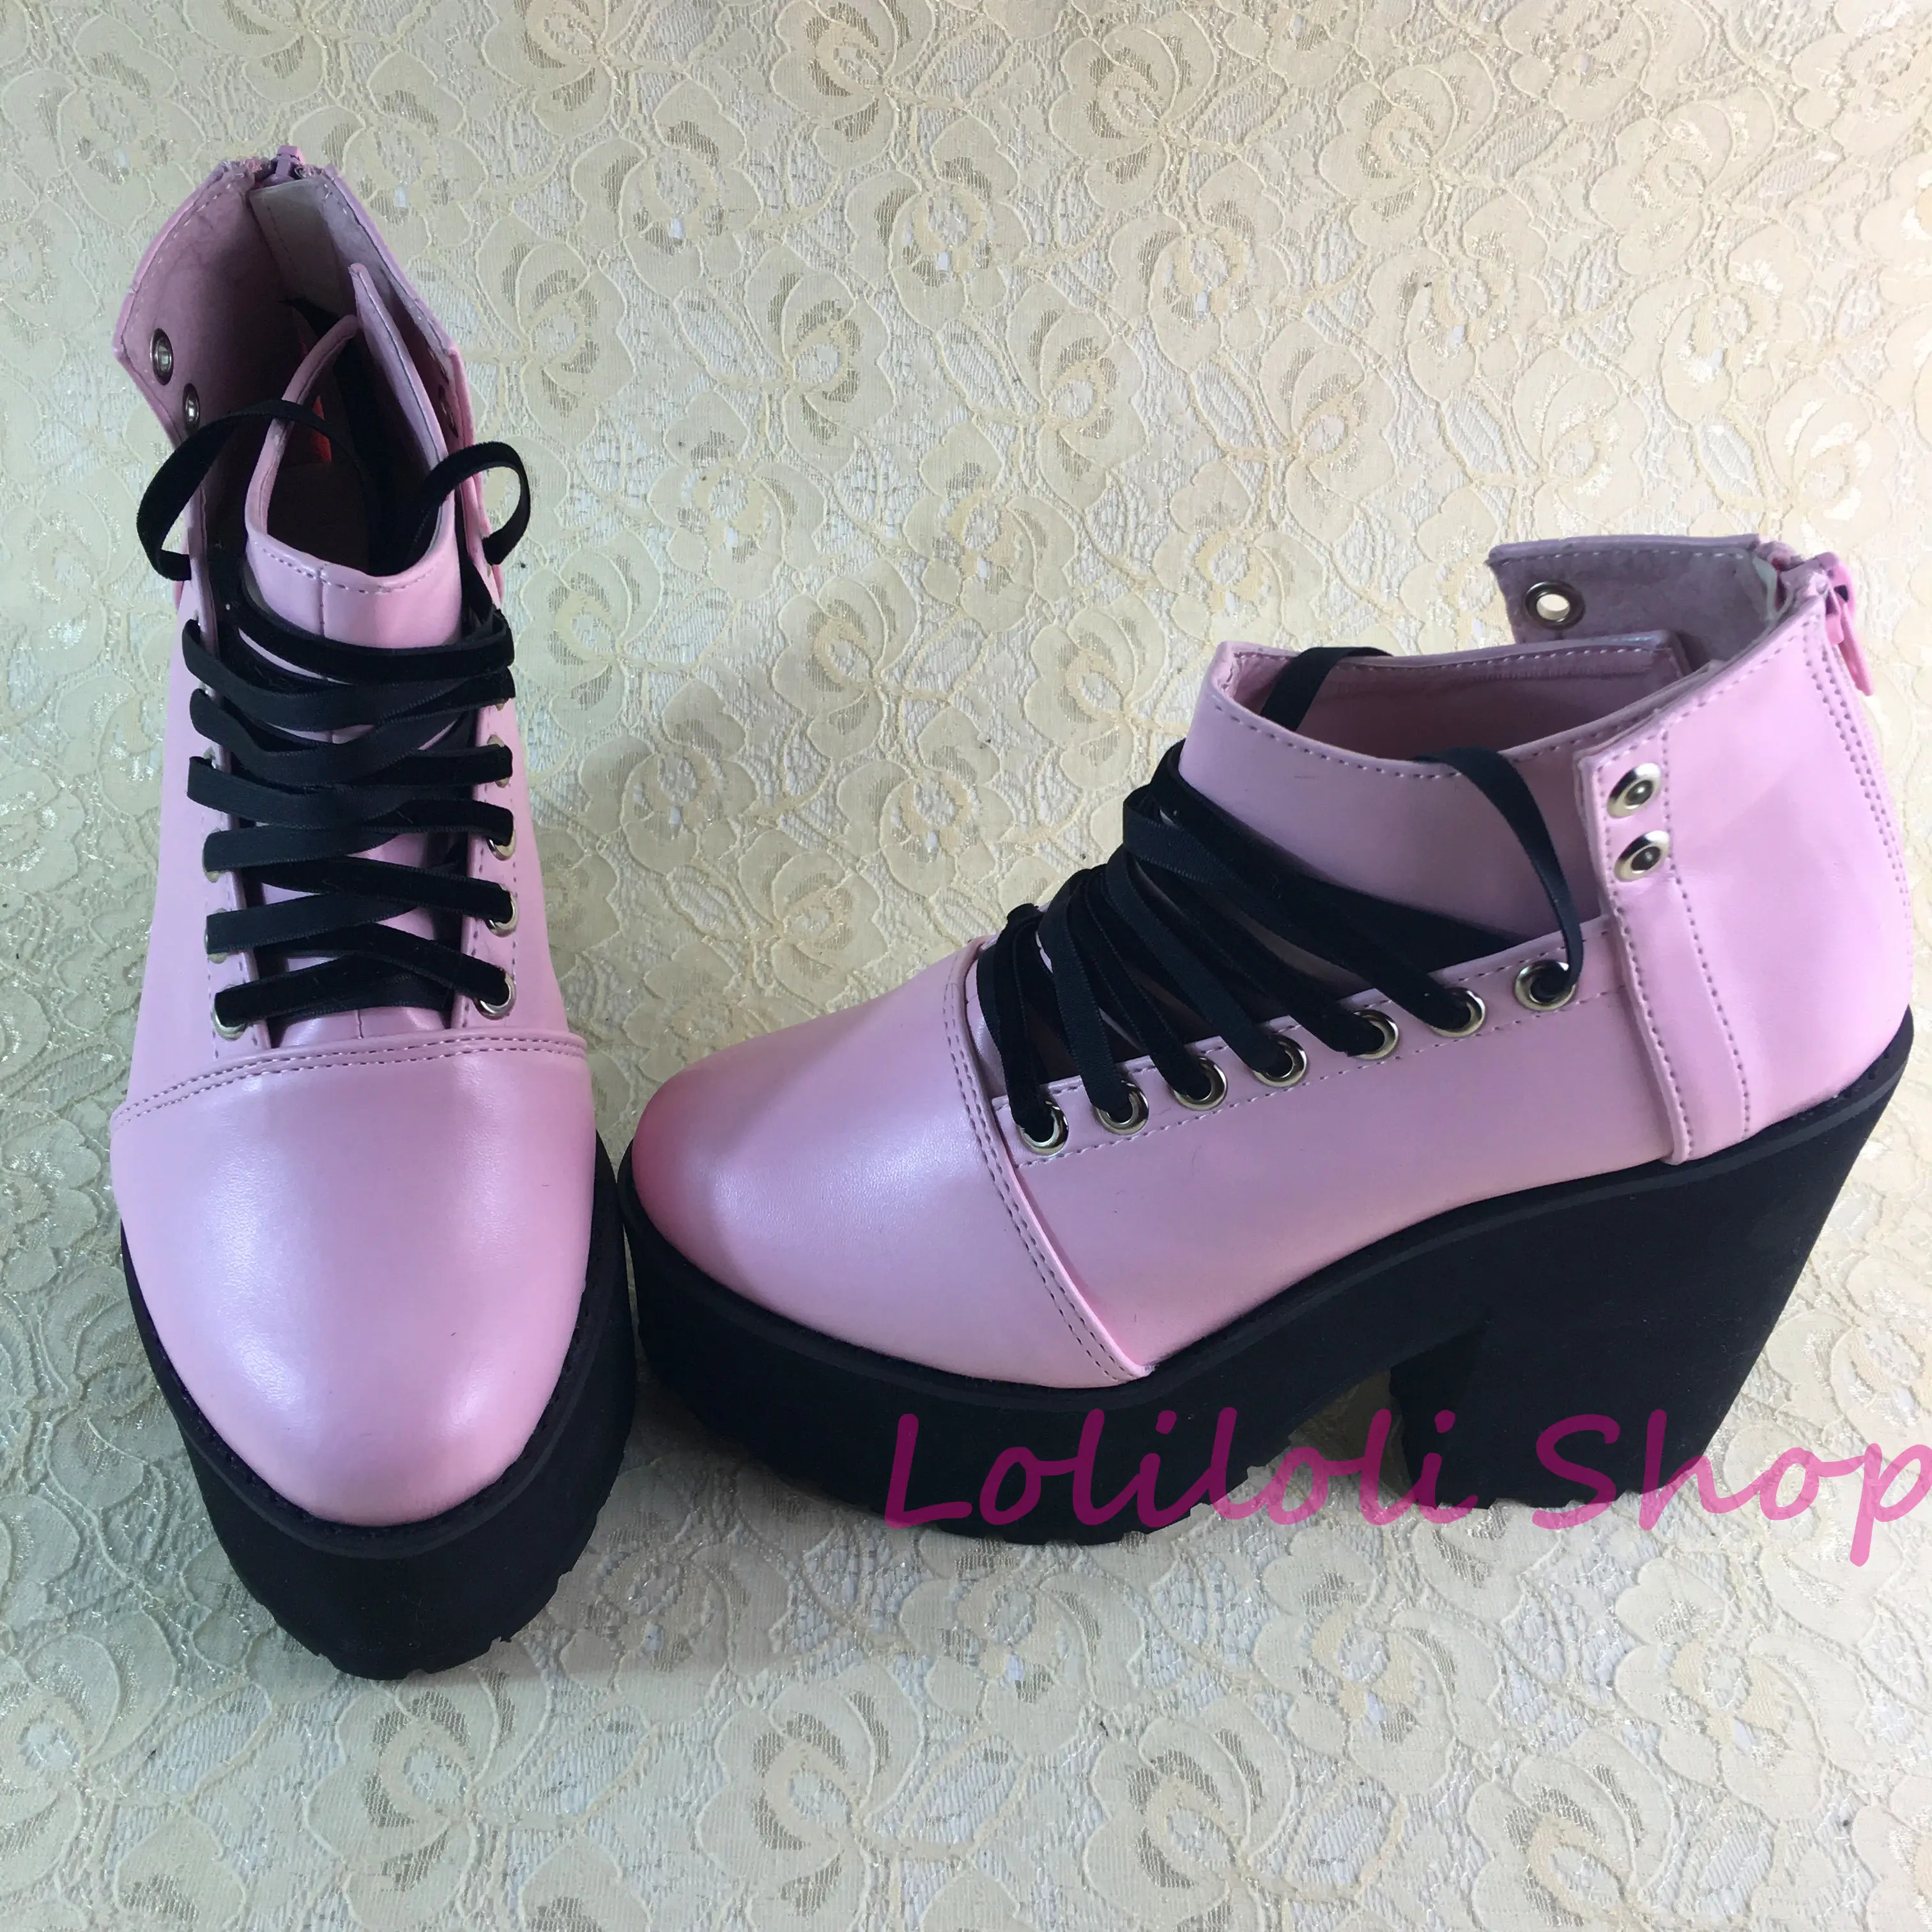 Фото Туфли принцессы sweet lolita Loliloliyoyo antaina японский дизайн на заказ Розовые Яркие туфли